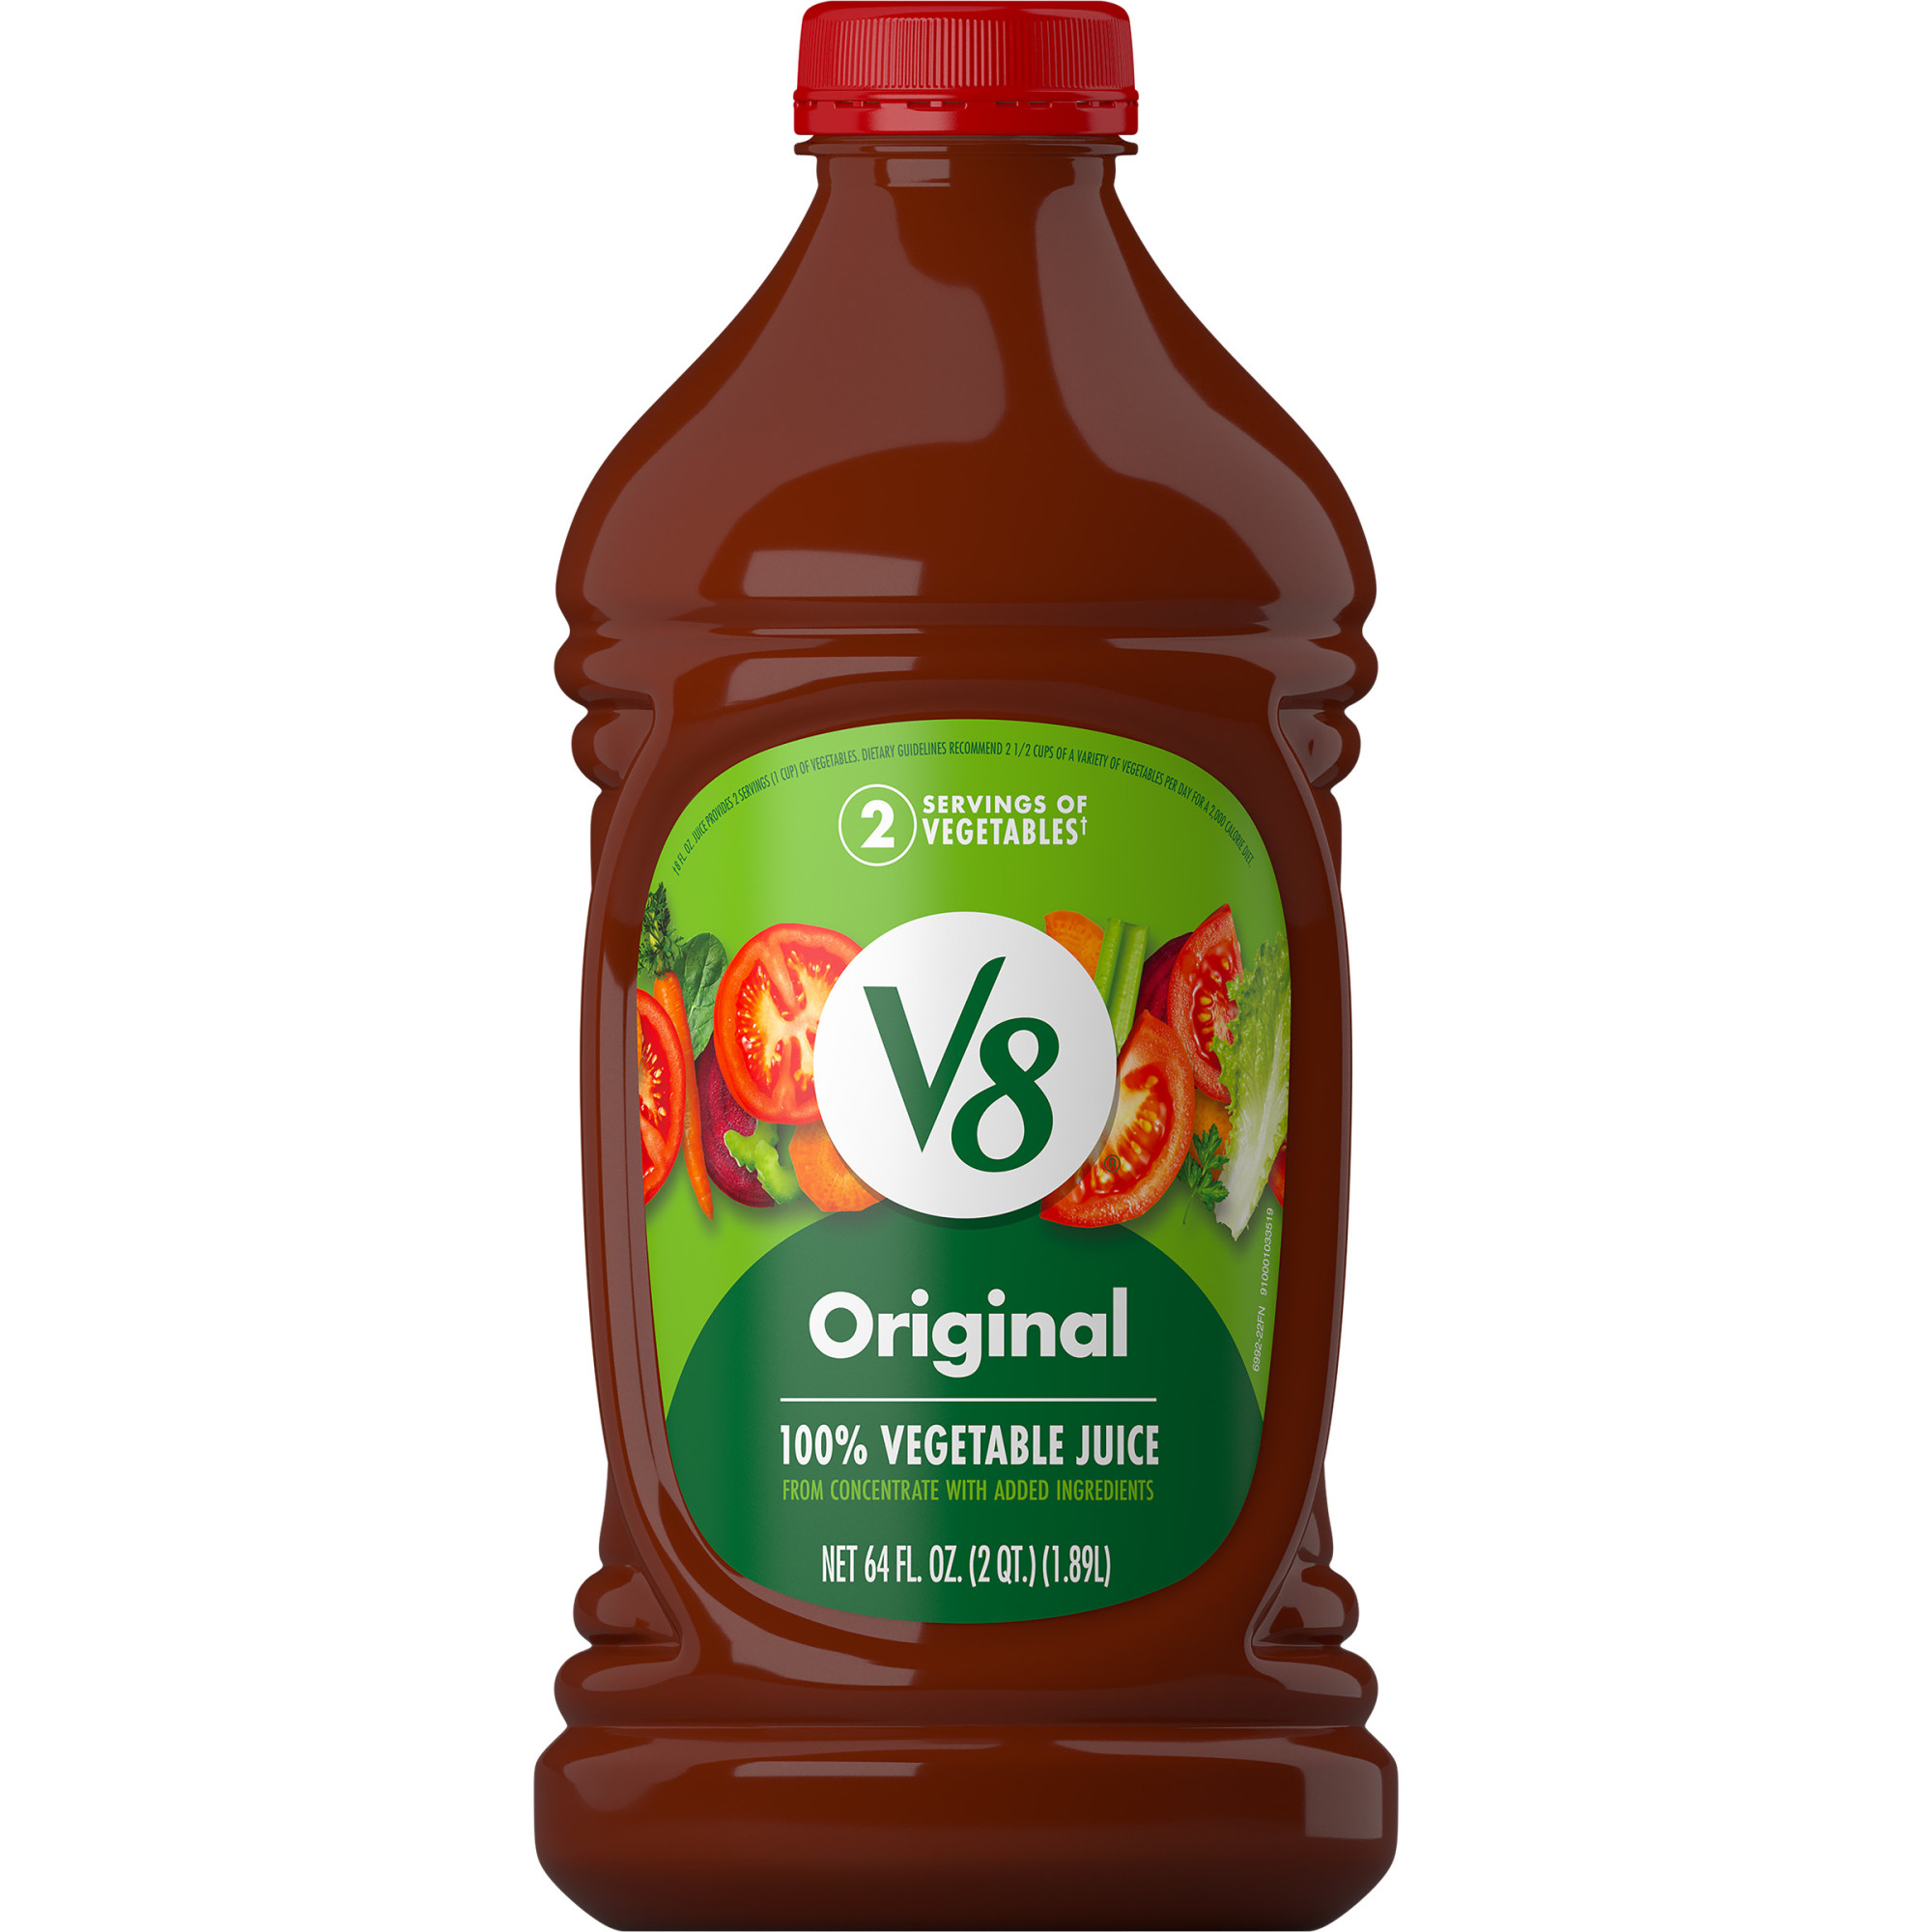 V8 Original 100% Vegetable Juice, 64 fl oz Bottle - image 1 of 7